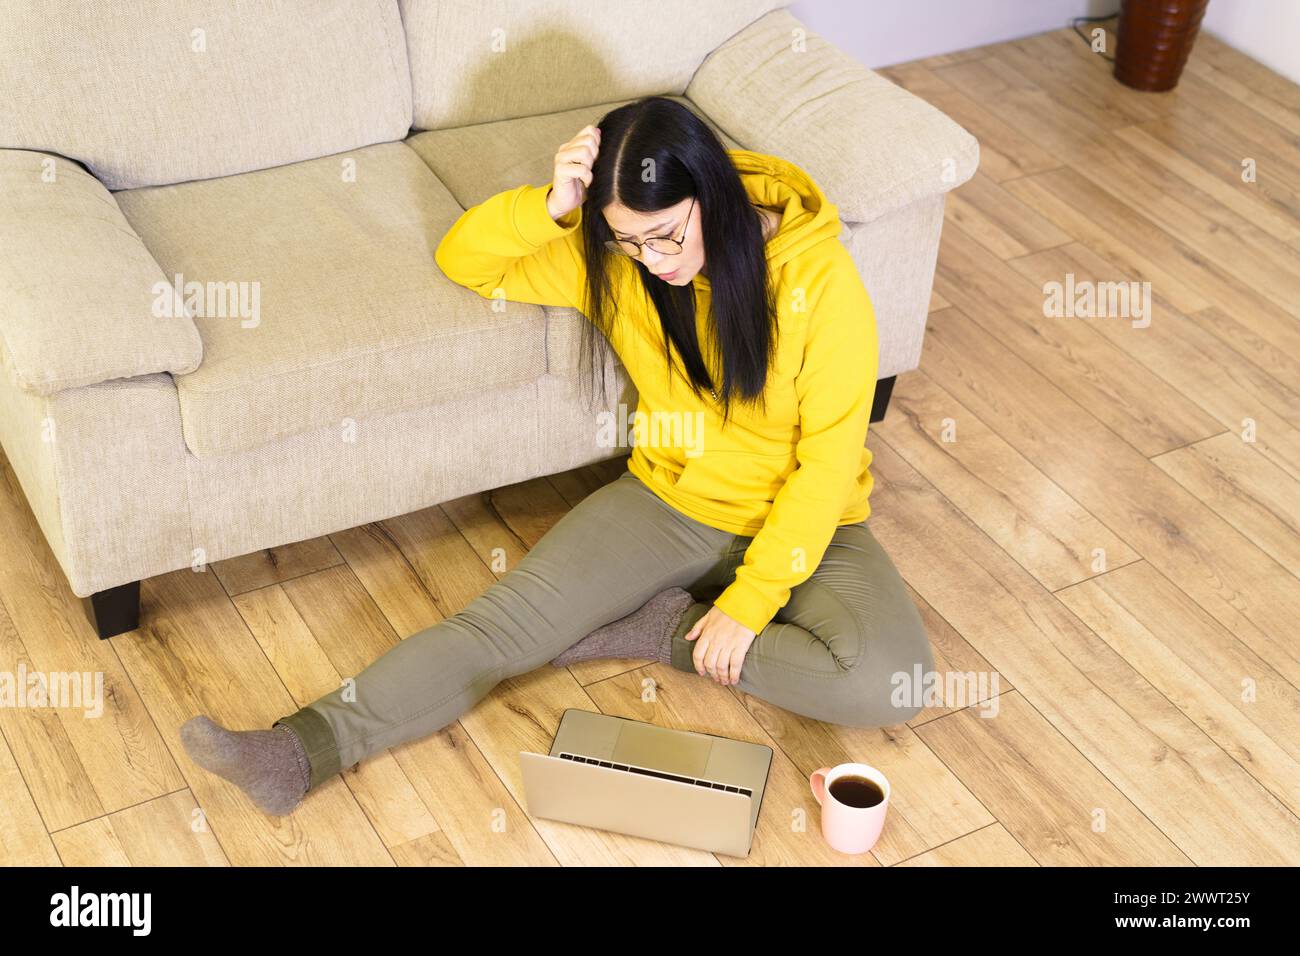 Una donna è seduta sul pavimento con un portatile di fronte a lei. Indossa una felpa gialla con cappuccio e indossa gli occhiali. La scena è informale e rilassata Foto Stock